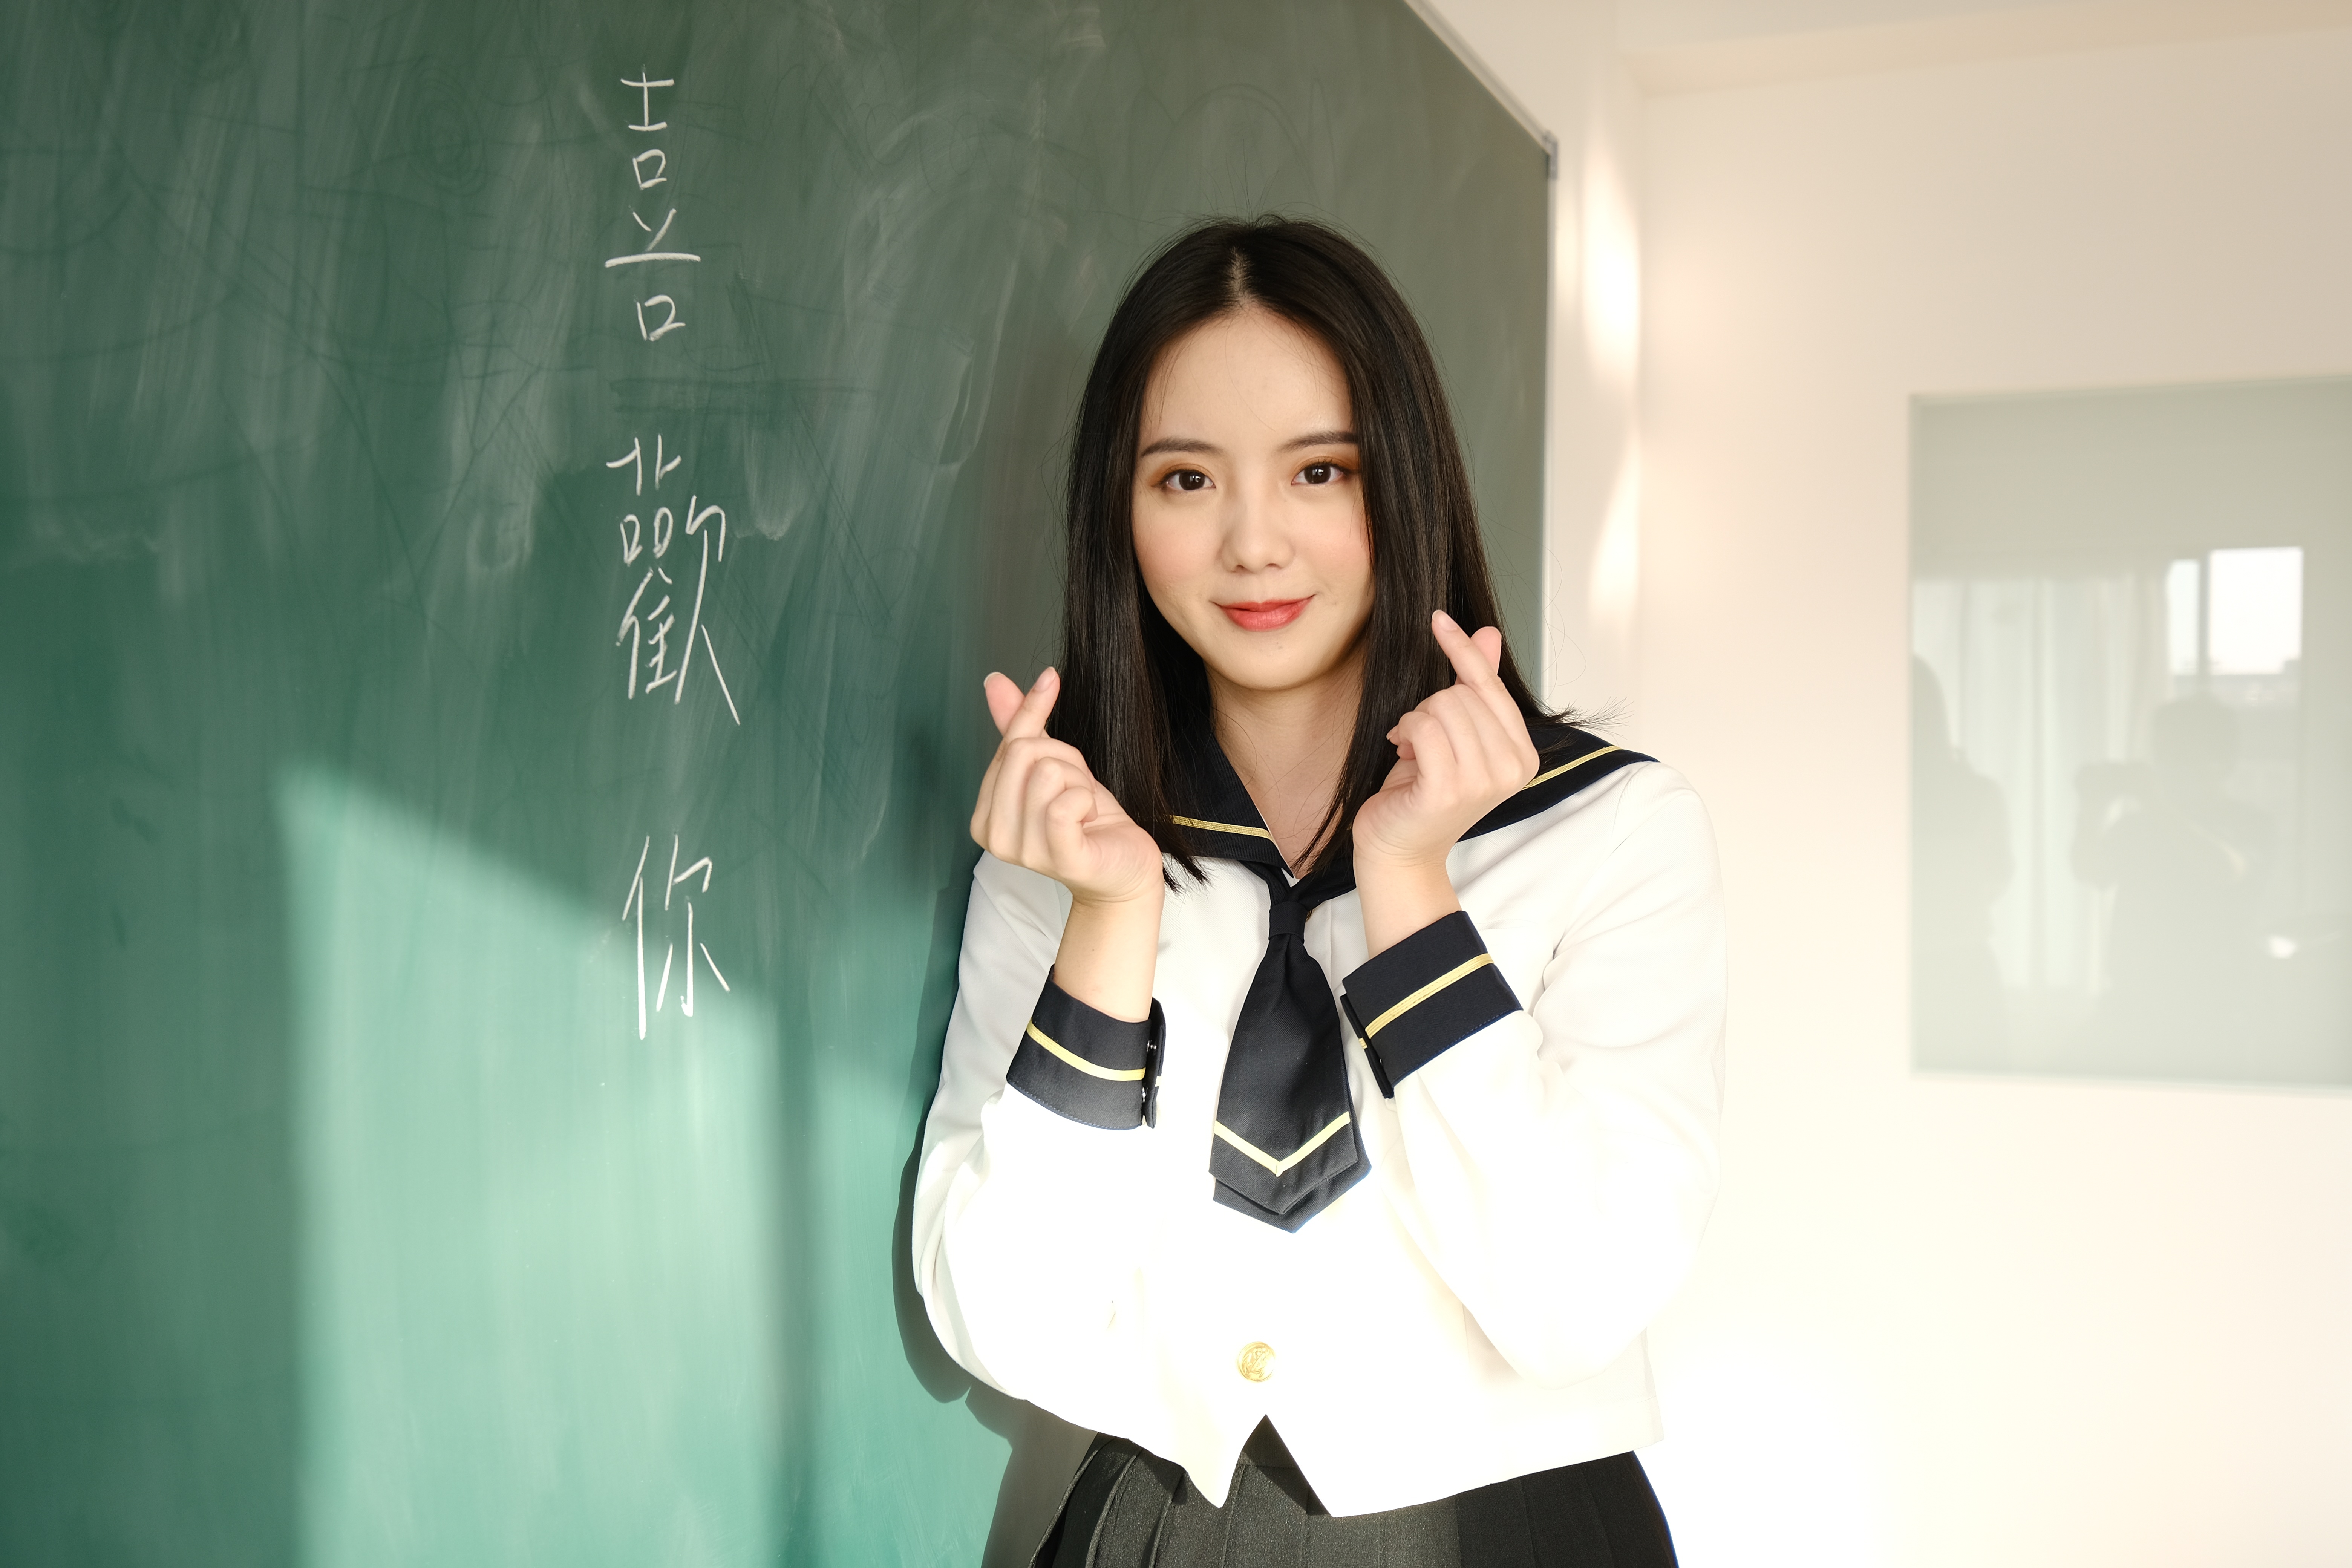 People 6240x4160 classroom chalkboard Asian school uniform women